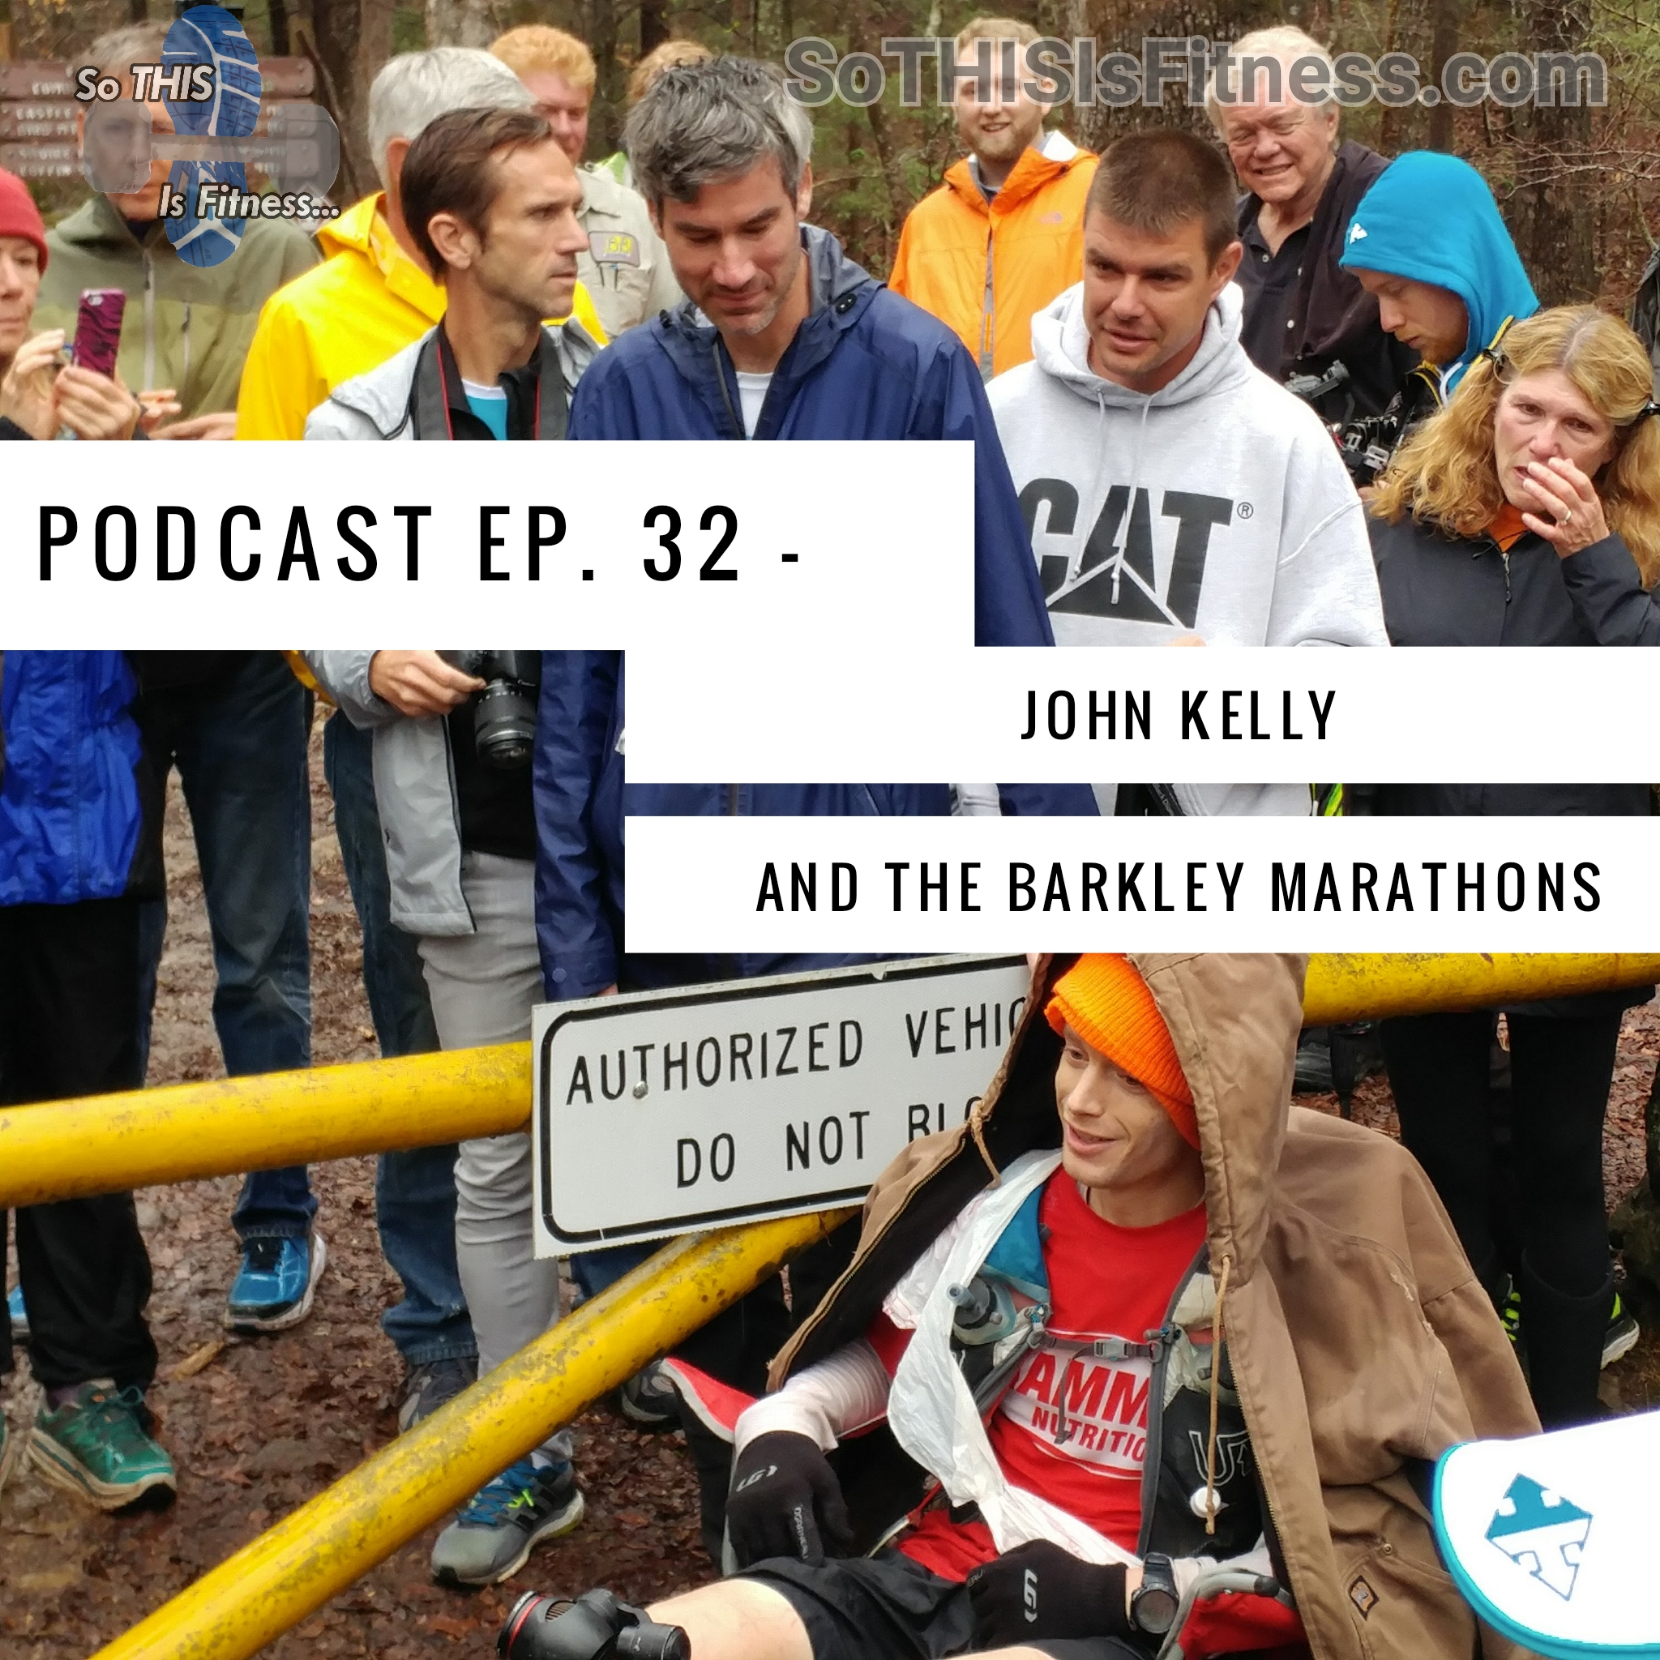 John Kelly, The Barkley Marathons, and “Heart” (Podcast #32)